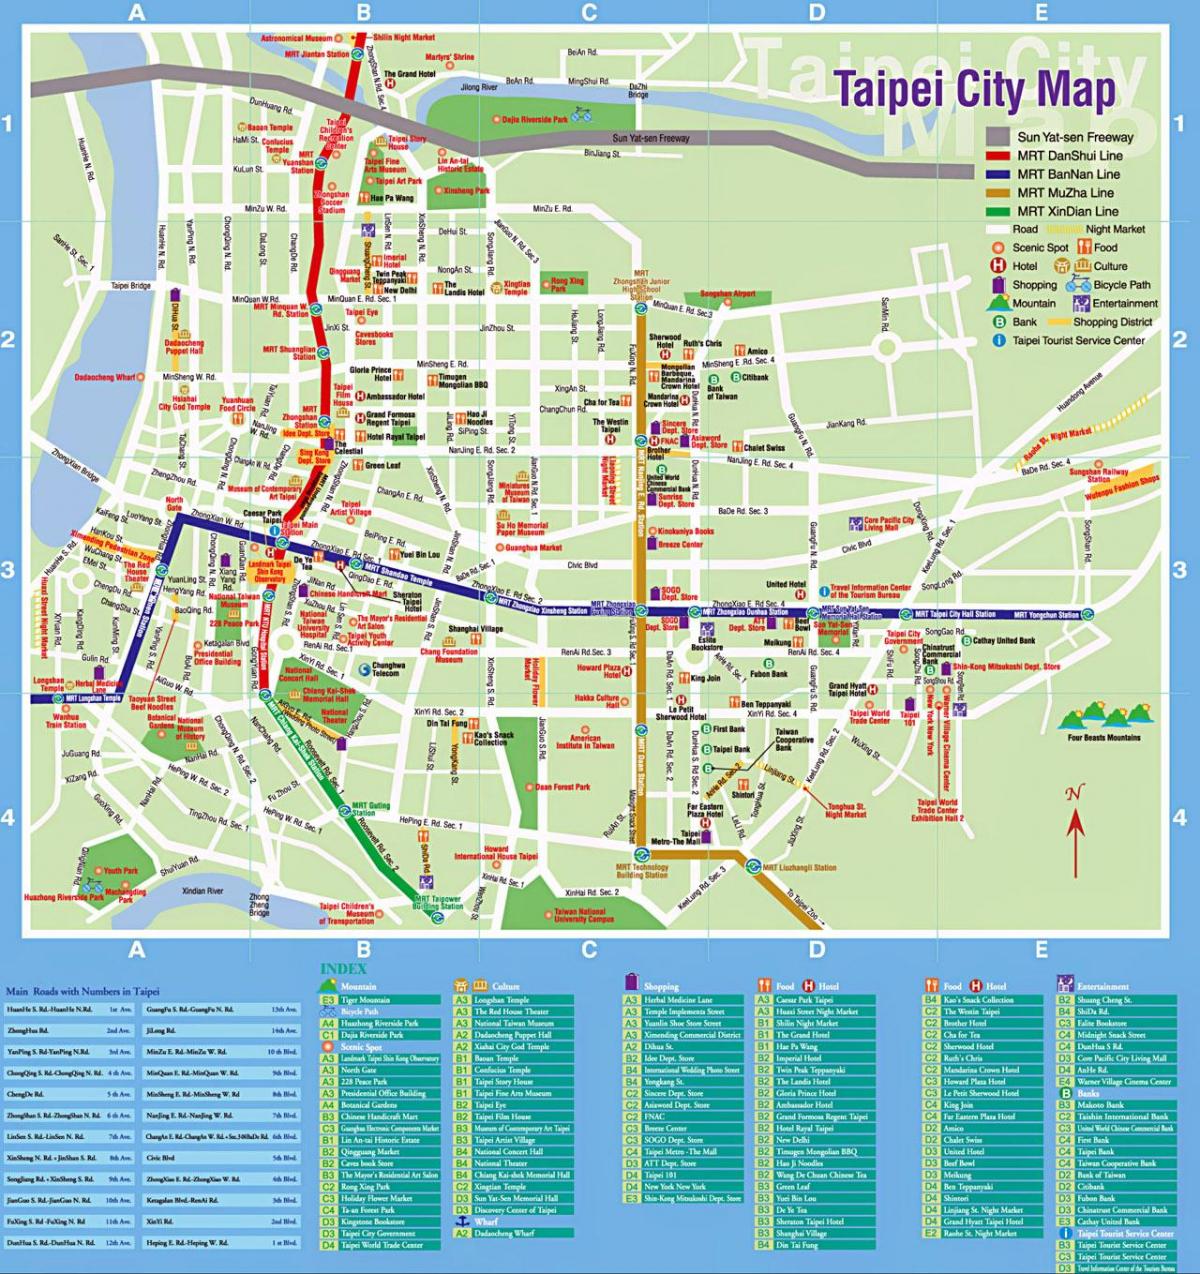 mapa de la ciutat de Taipei turística